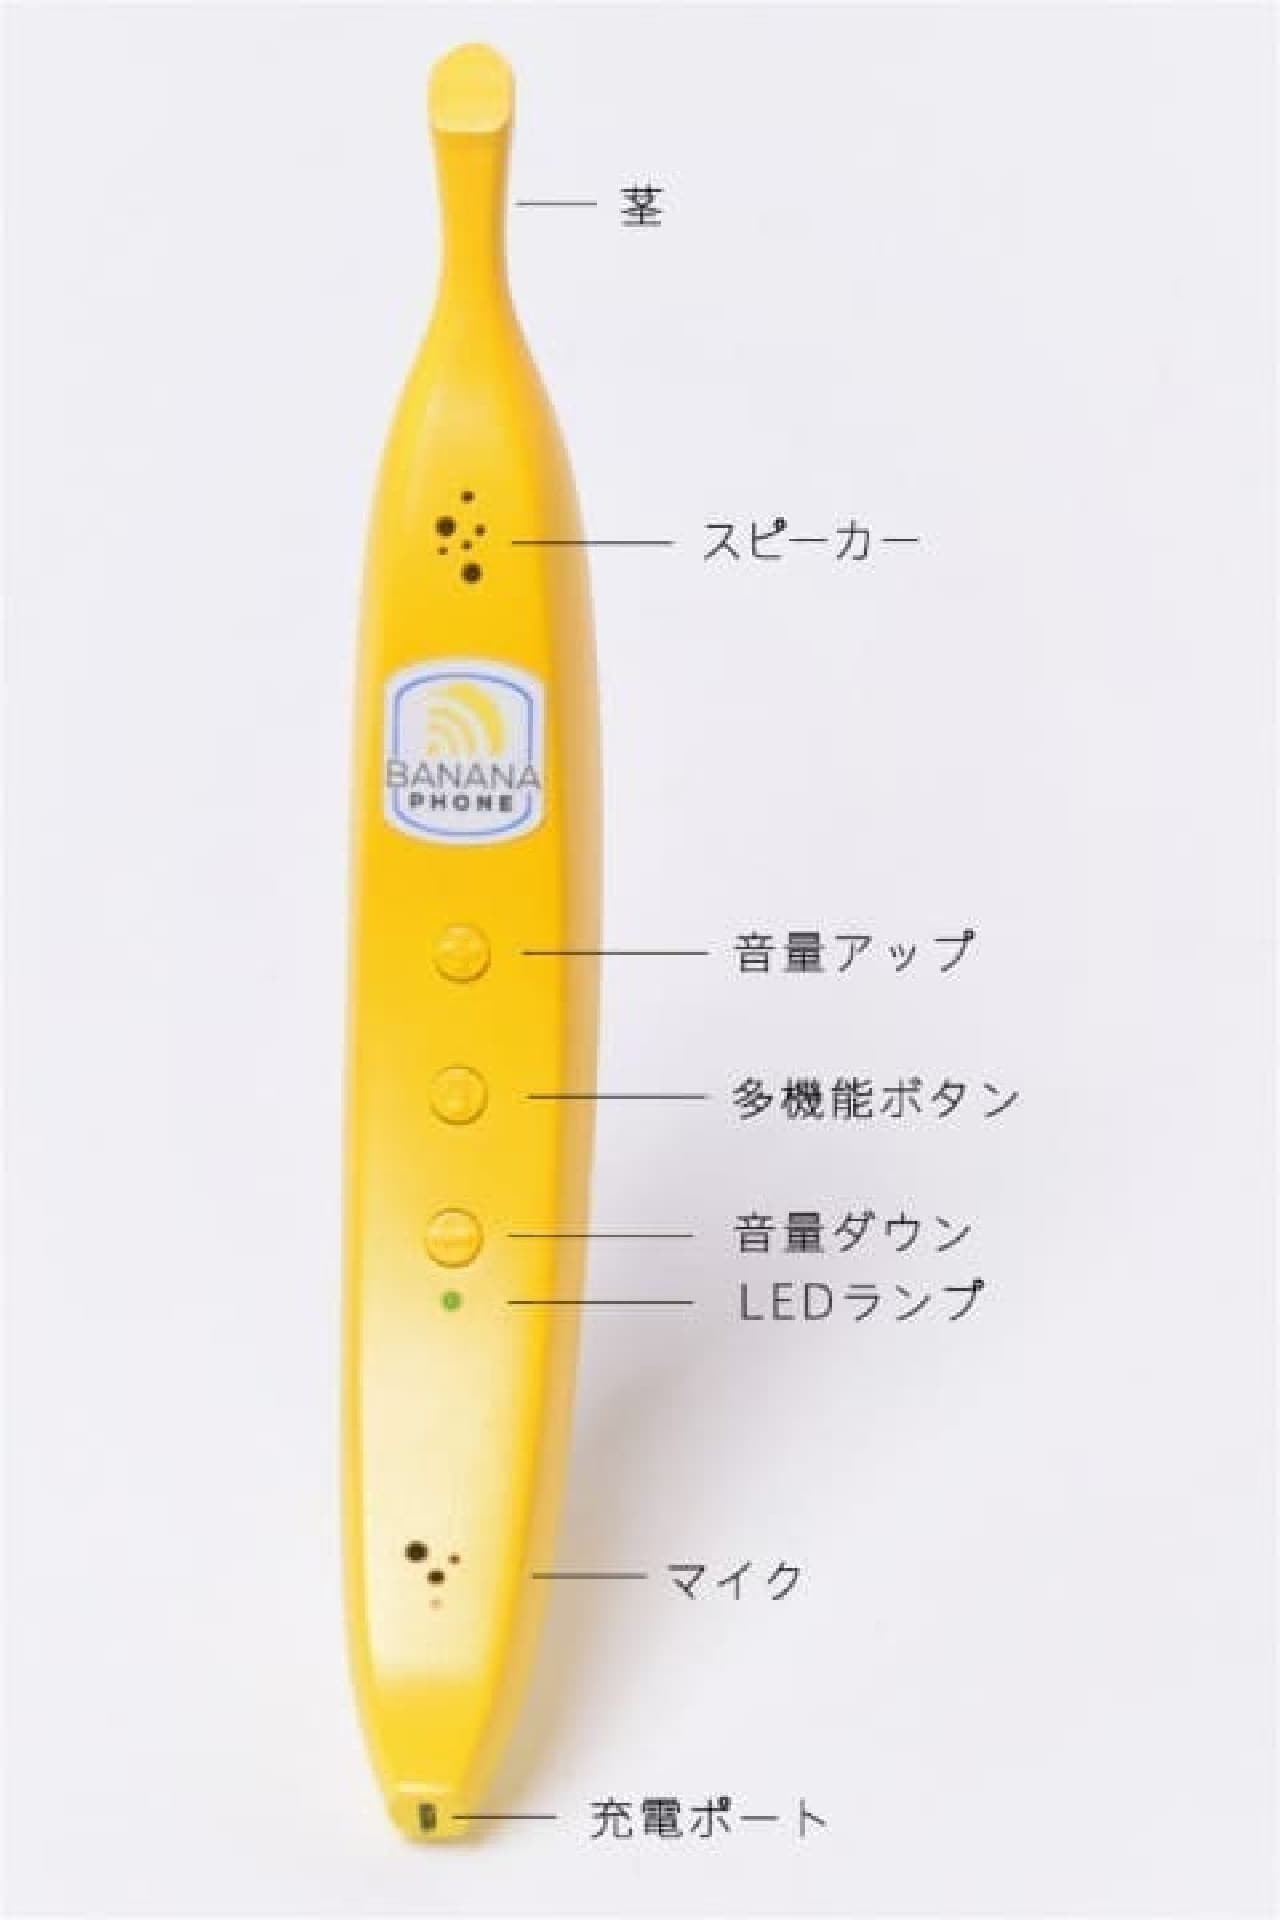 あの Banana Phone バナナフォン が 日本上陸 バナナそっくり な スマートフォン用受話器 インターネットコム